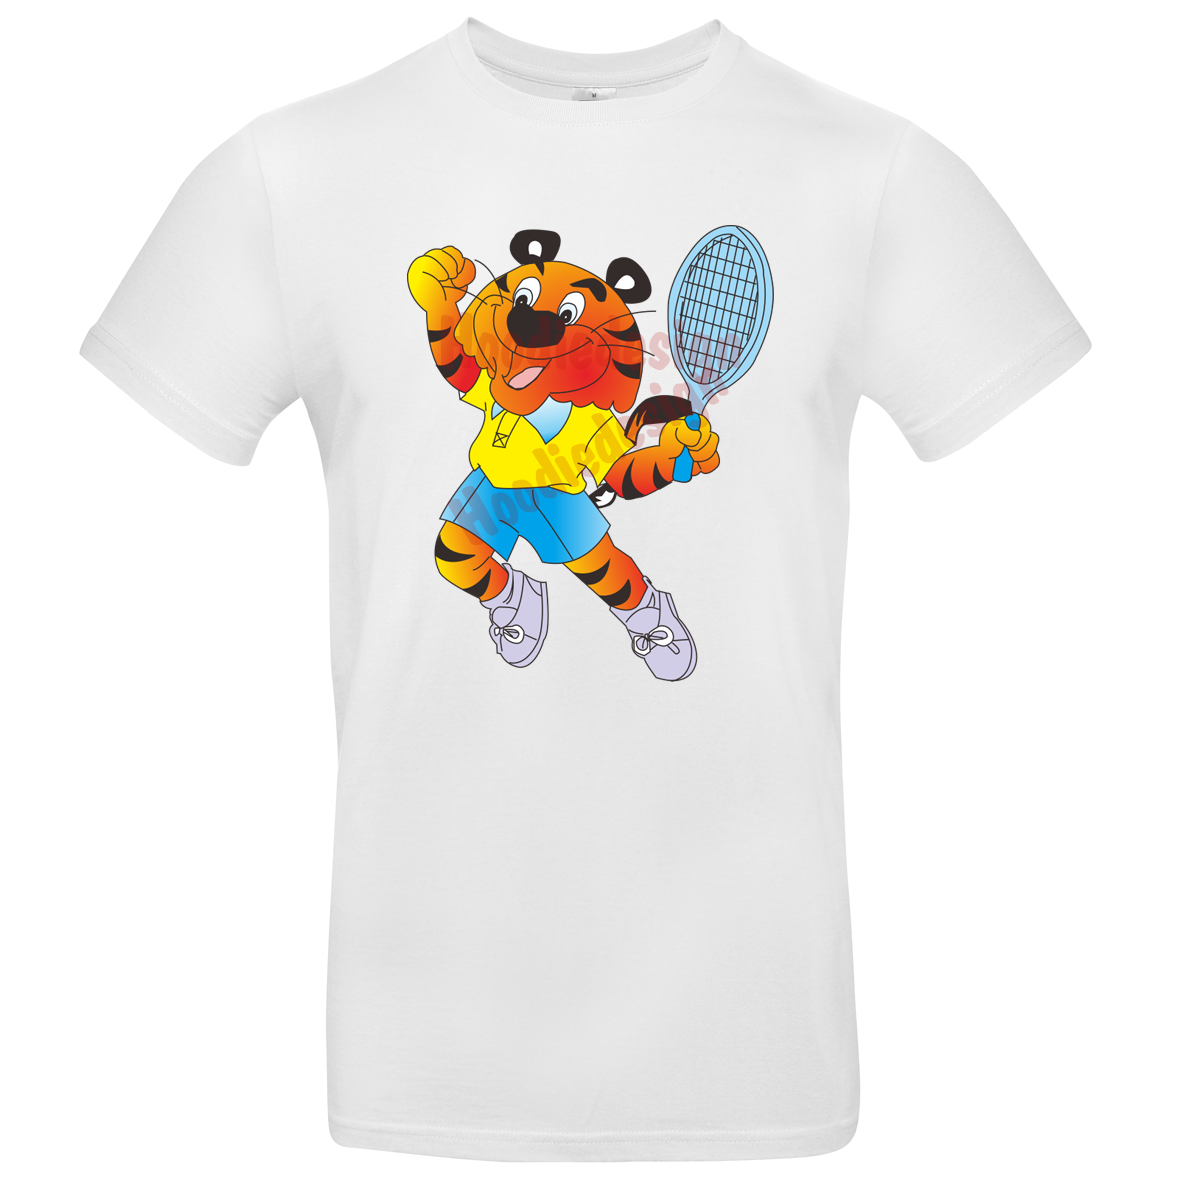 Kinder T Shirt mit Tennis Tiger 104 - 158